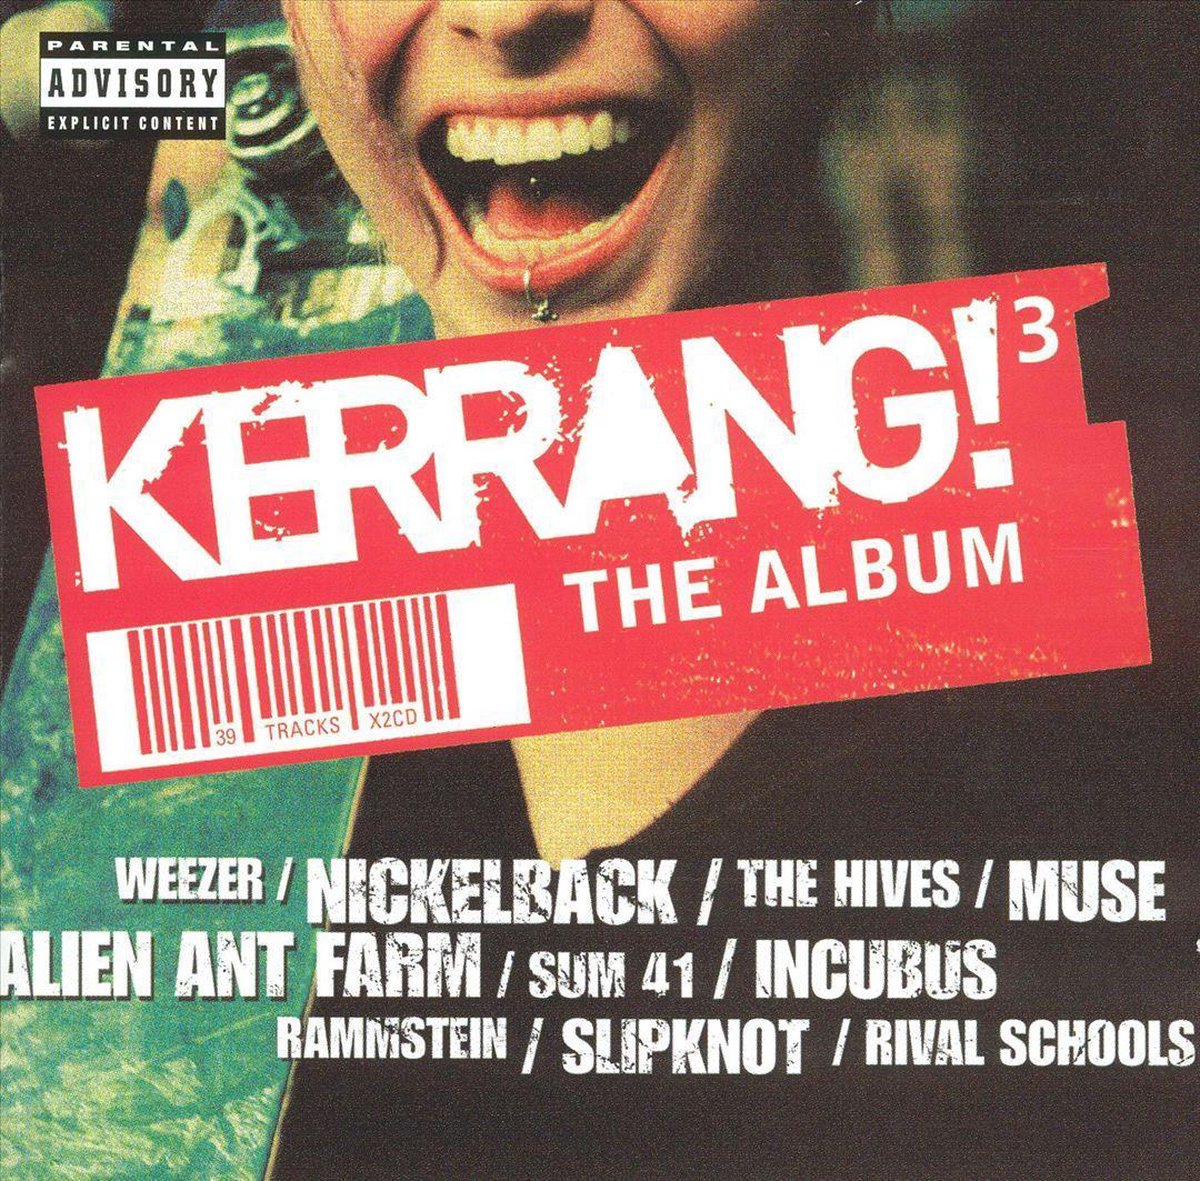 Kerrang! The Album Vol. 3 - various artists